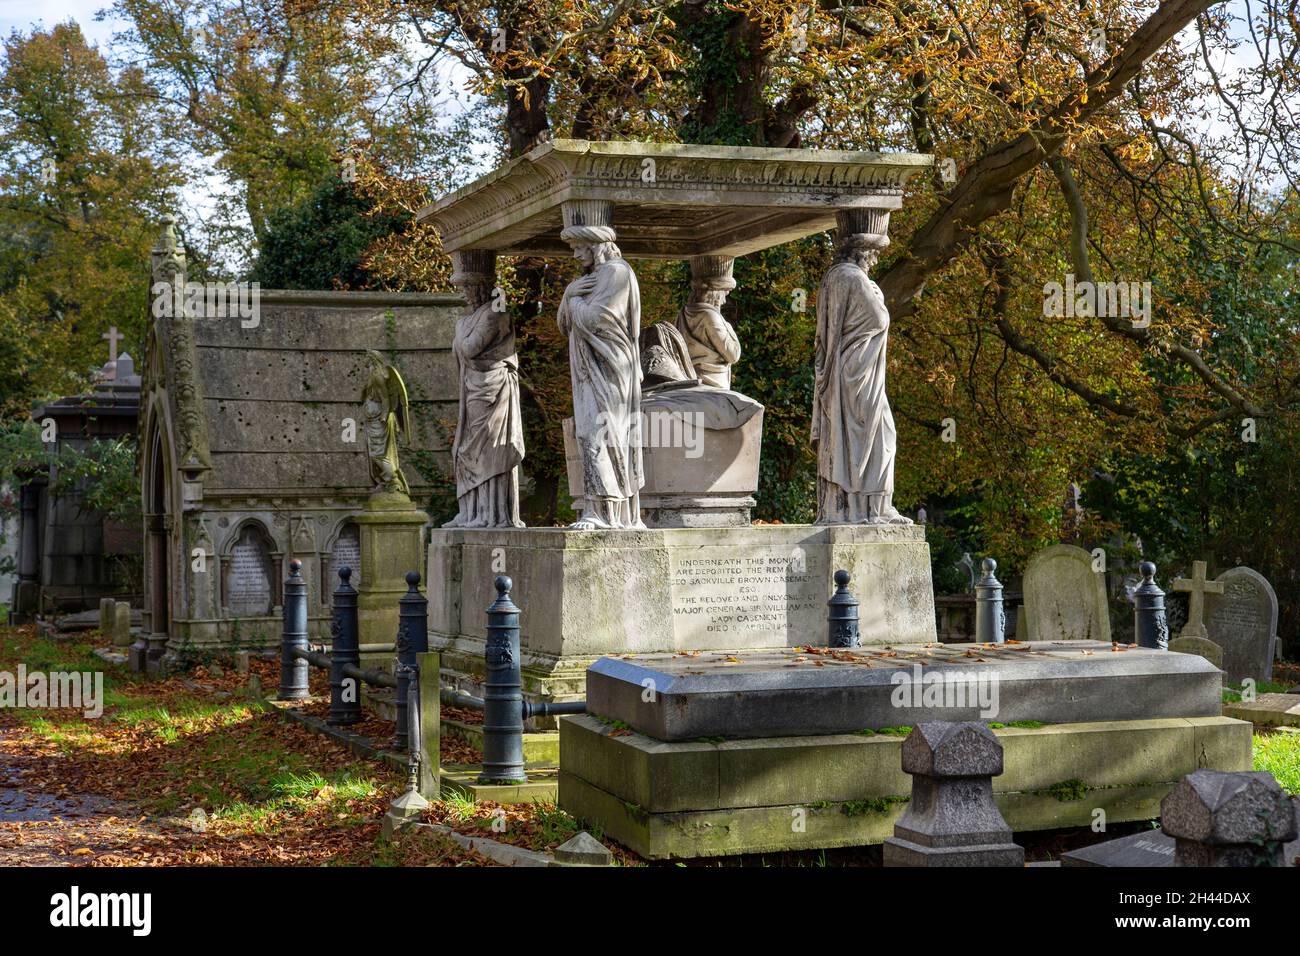 Monumentos funerarios de piedra de principios del siglo XIX, uno de ellos con caryatids en el cementerio verde de Kensal bajo el sol de otoño Foto de stock